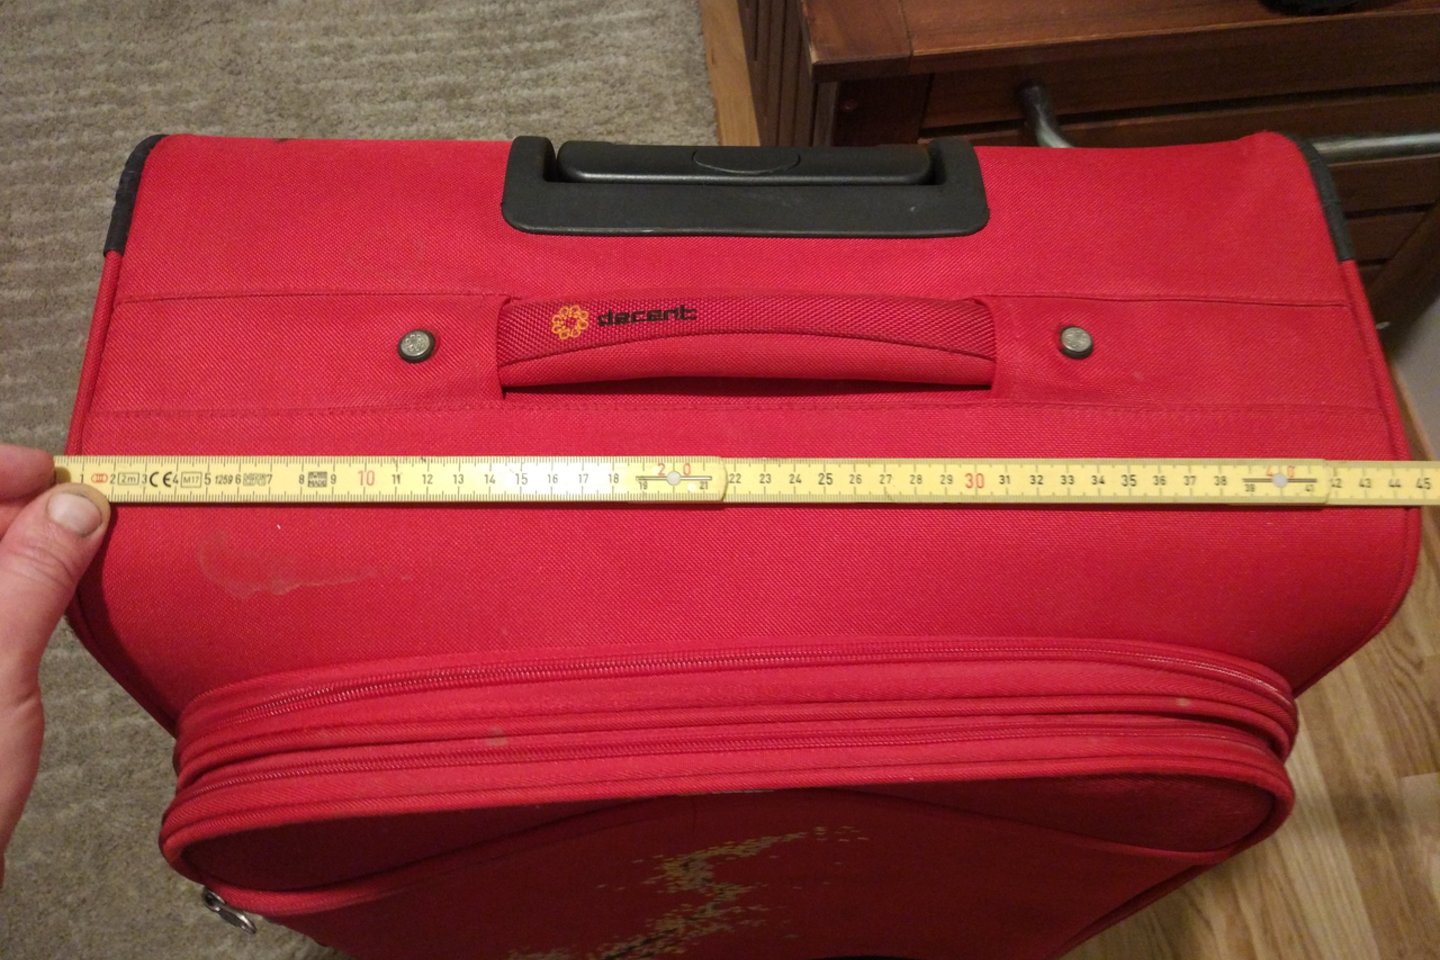 Keleivę nustebino, kad „Wizz Air“ 10 kg registruoto bagažo reikalavimai yra ne aprašyti, bet pavaizduoti įlaipinimo kortelėje.<br> Skaitytojos nuotr.